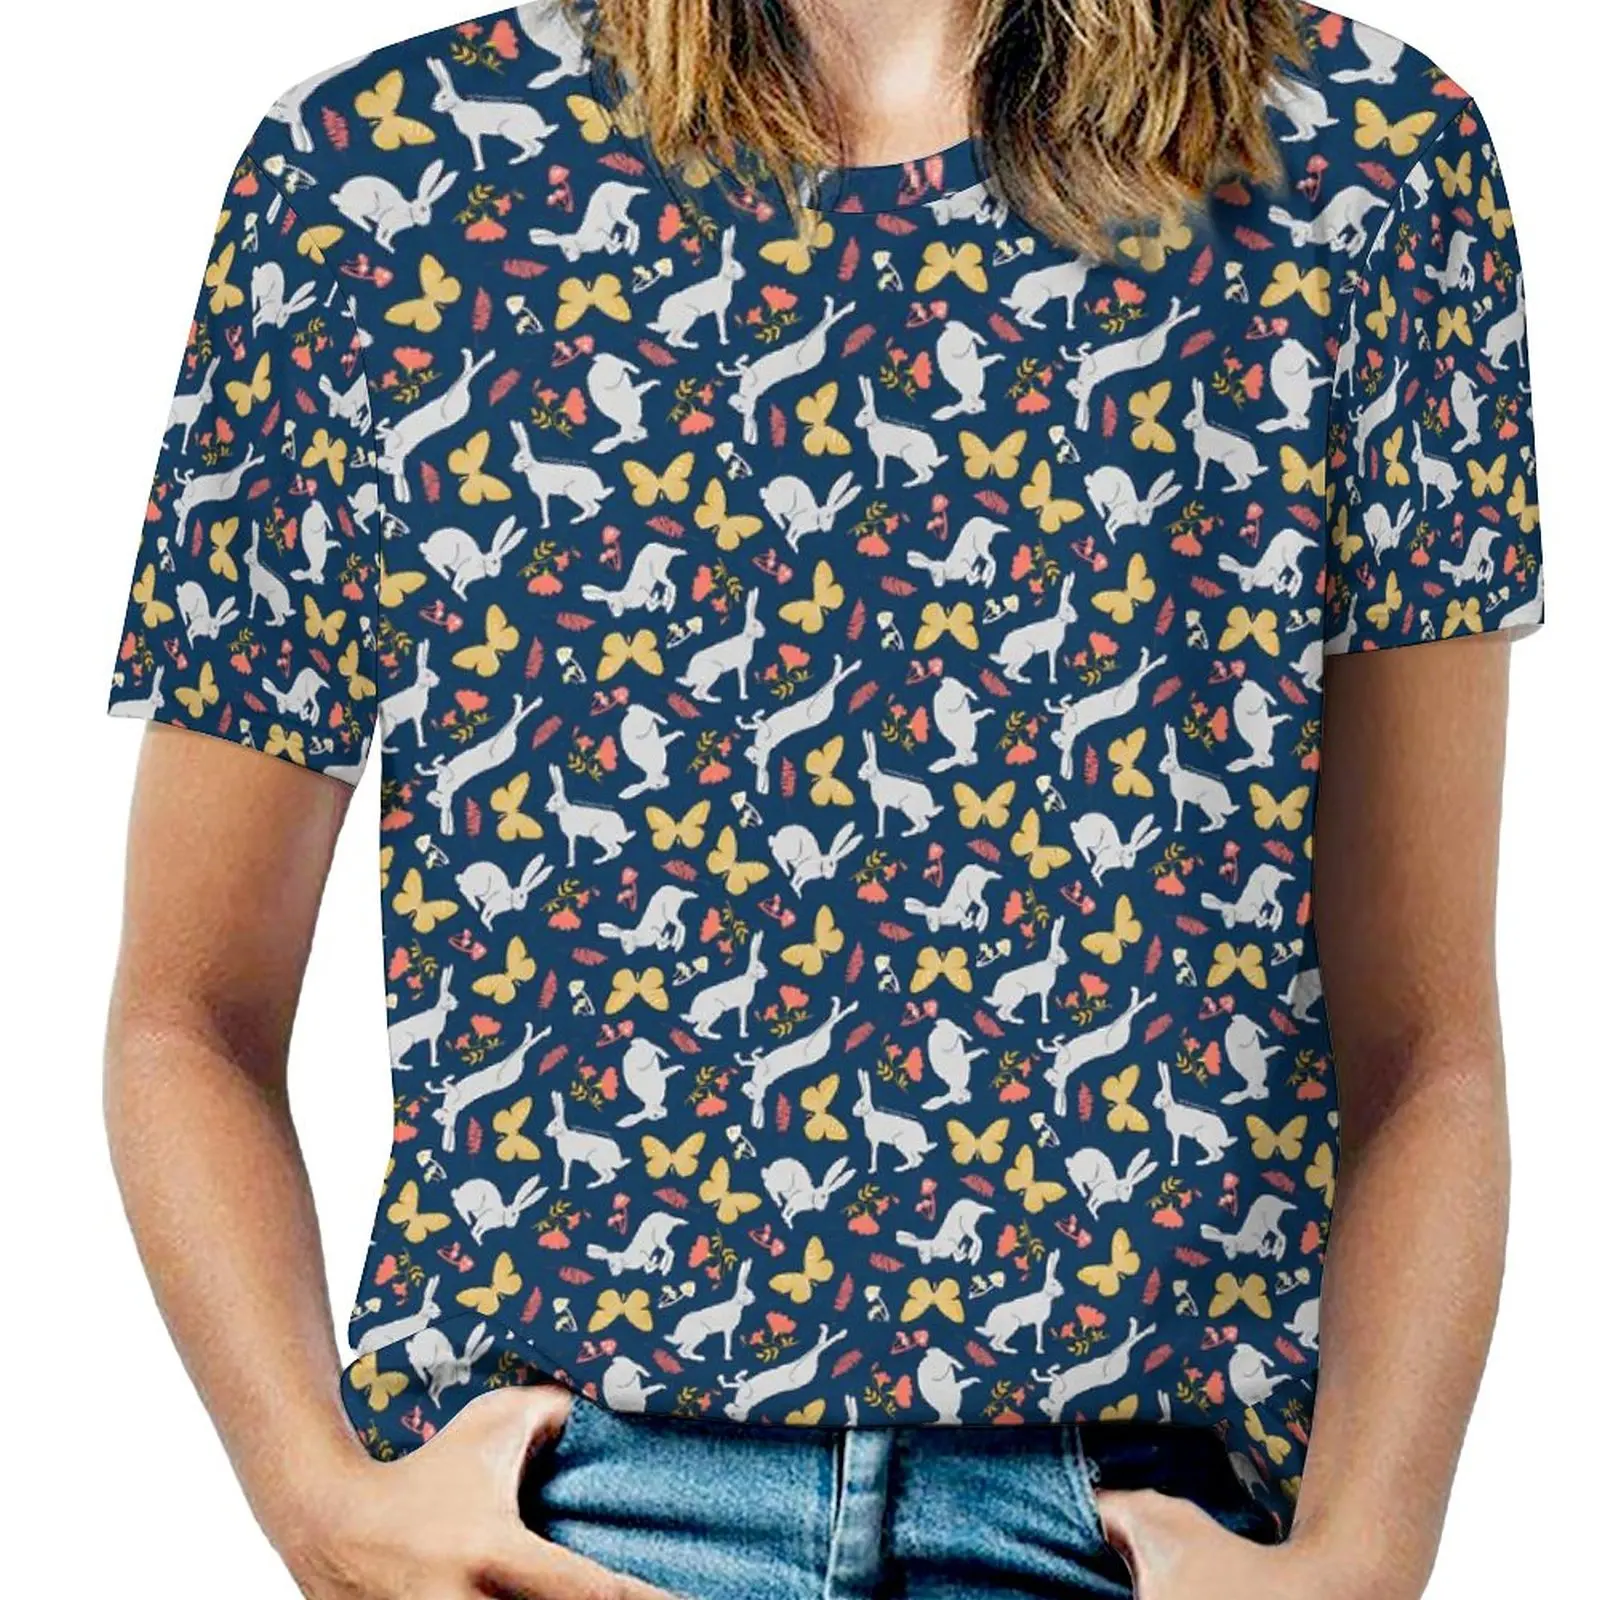 

Cute Rabbit T Shirts Butterflies Print Casual Oversize T-Shirt Short Sleeve Woman Pretty Tee Shirt Summer Printed Tees